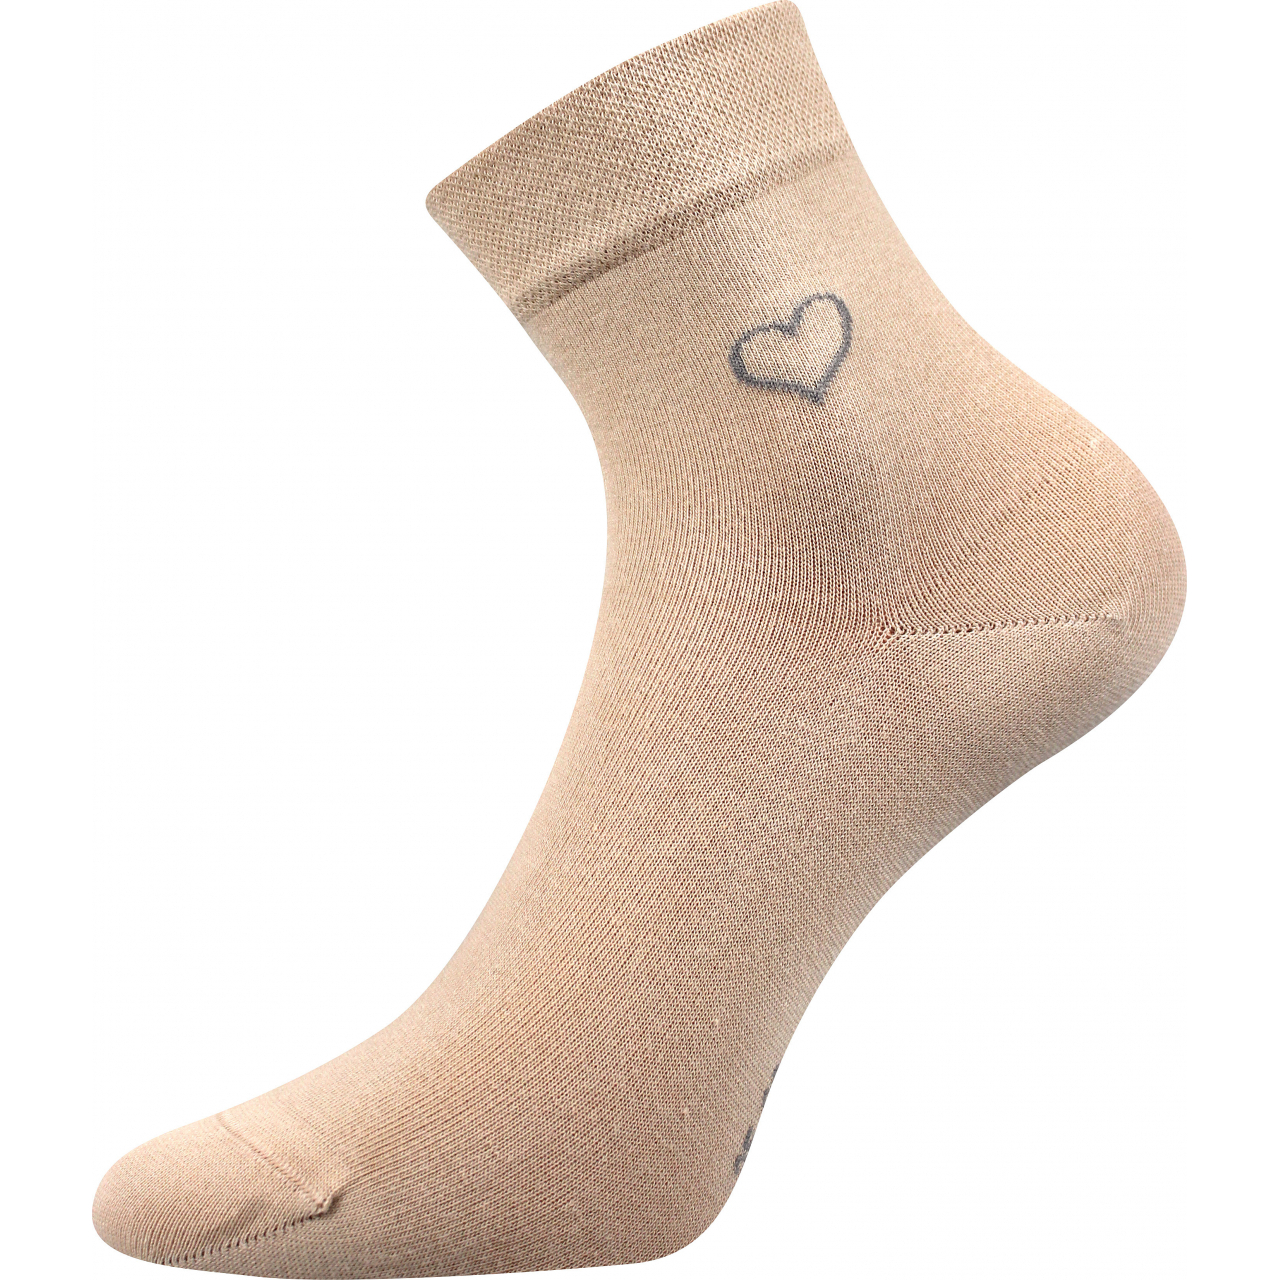 Ponožky elegantní dámské Lonka Filiona - béžové, 35-38